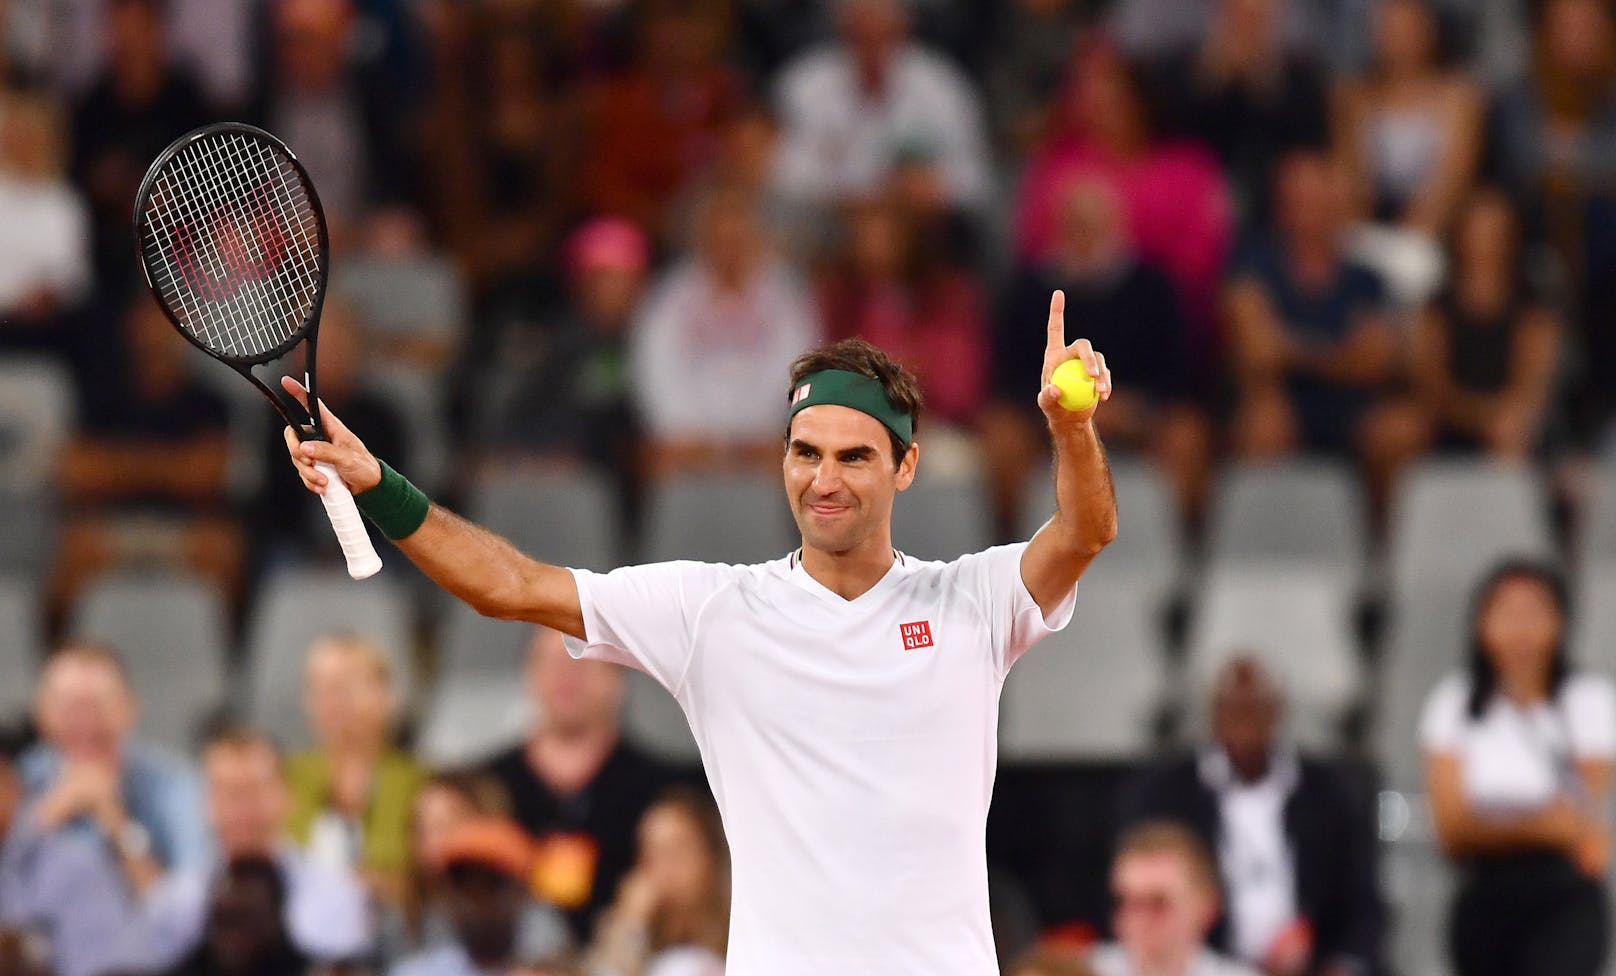 237 Wochen in Serie, führte Federer die Weltrangliste bislang am längsten an.&nbsp;